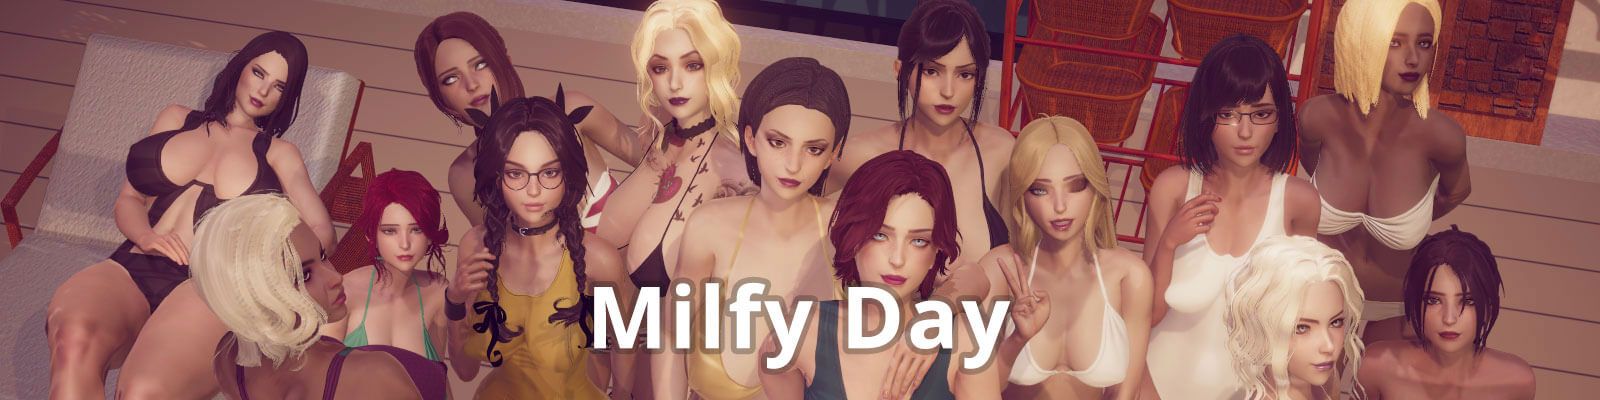 Milfy Day [v0.5.4]